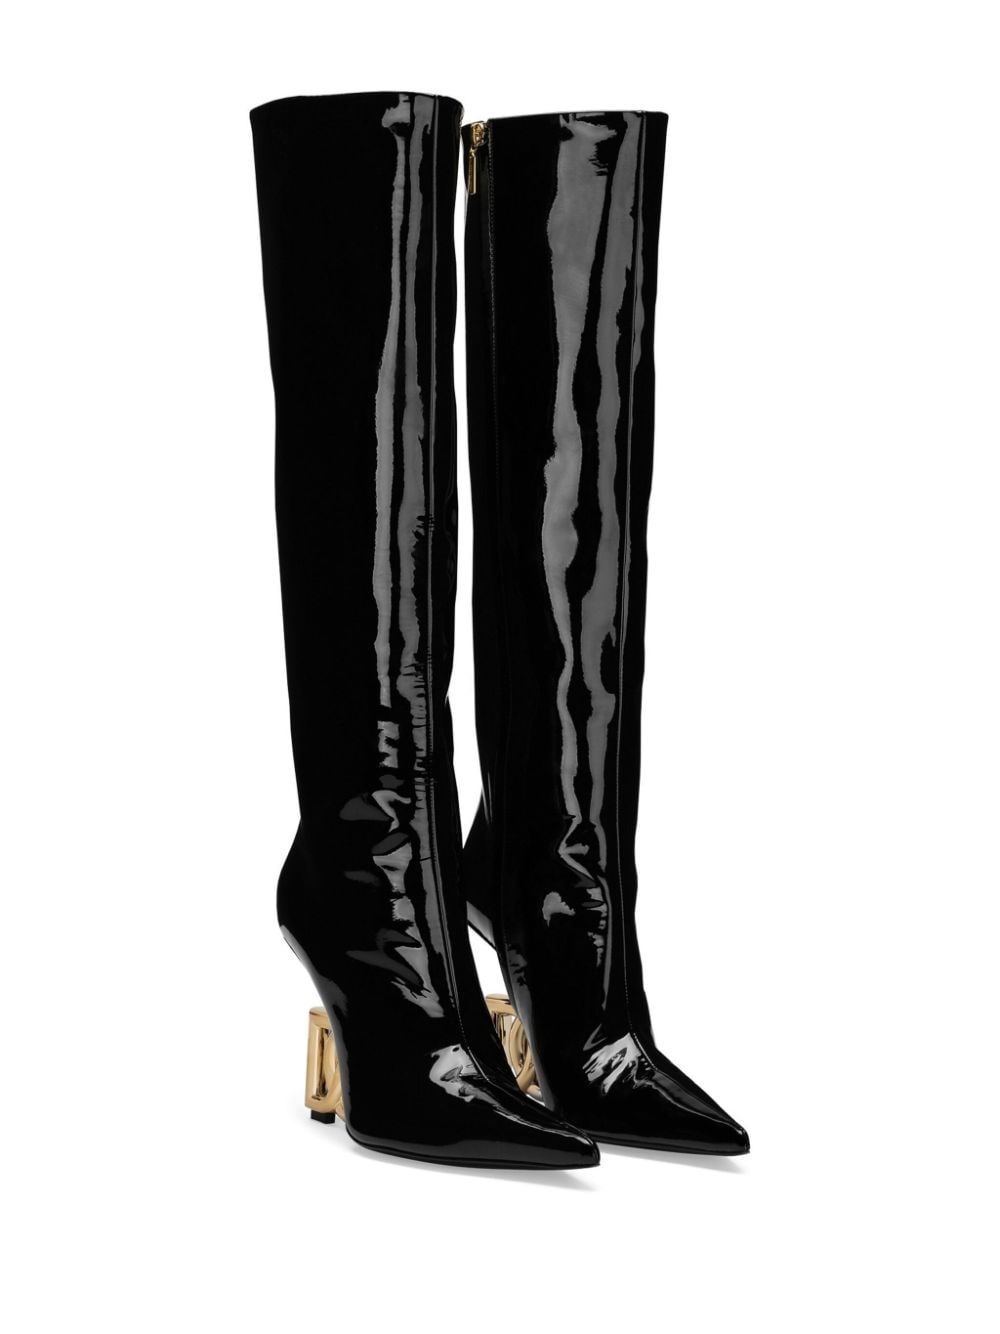 Dolce & Gabbana 105mm DG-heel High Boots - Farfetch